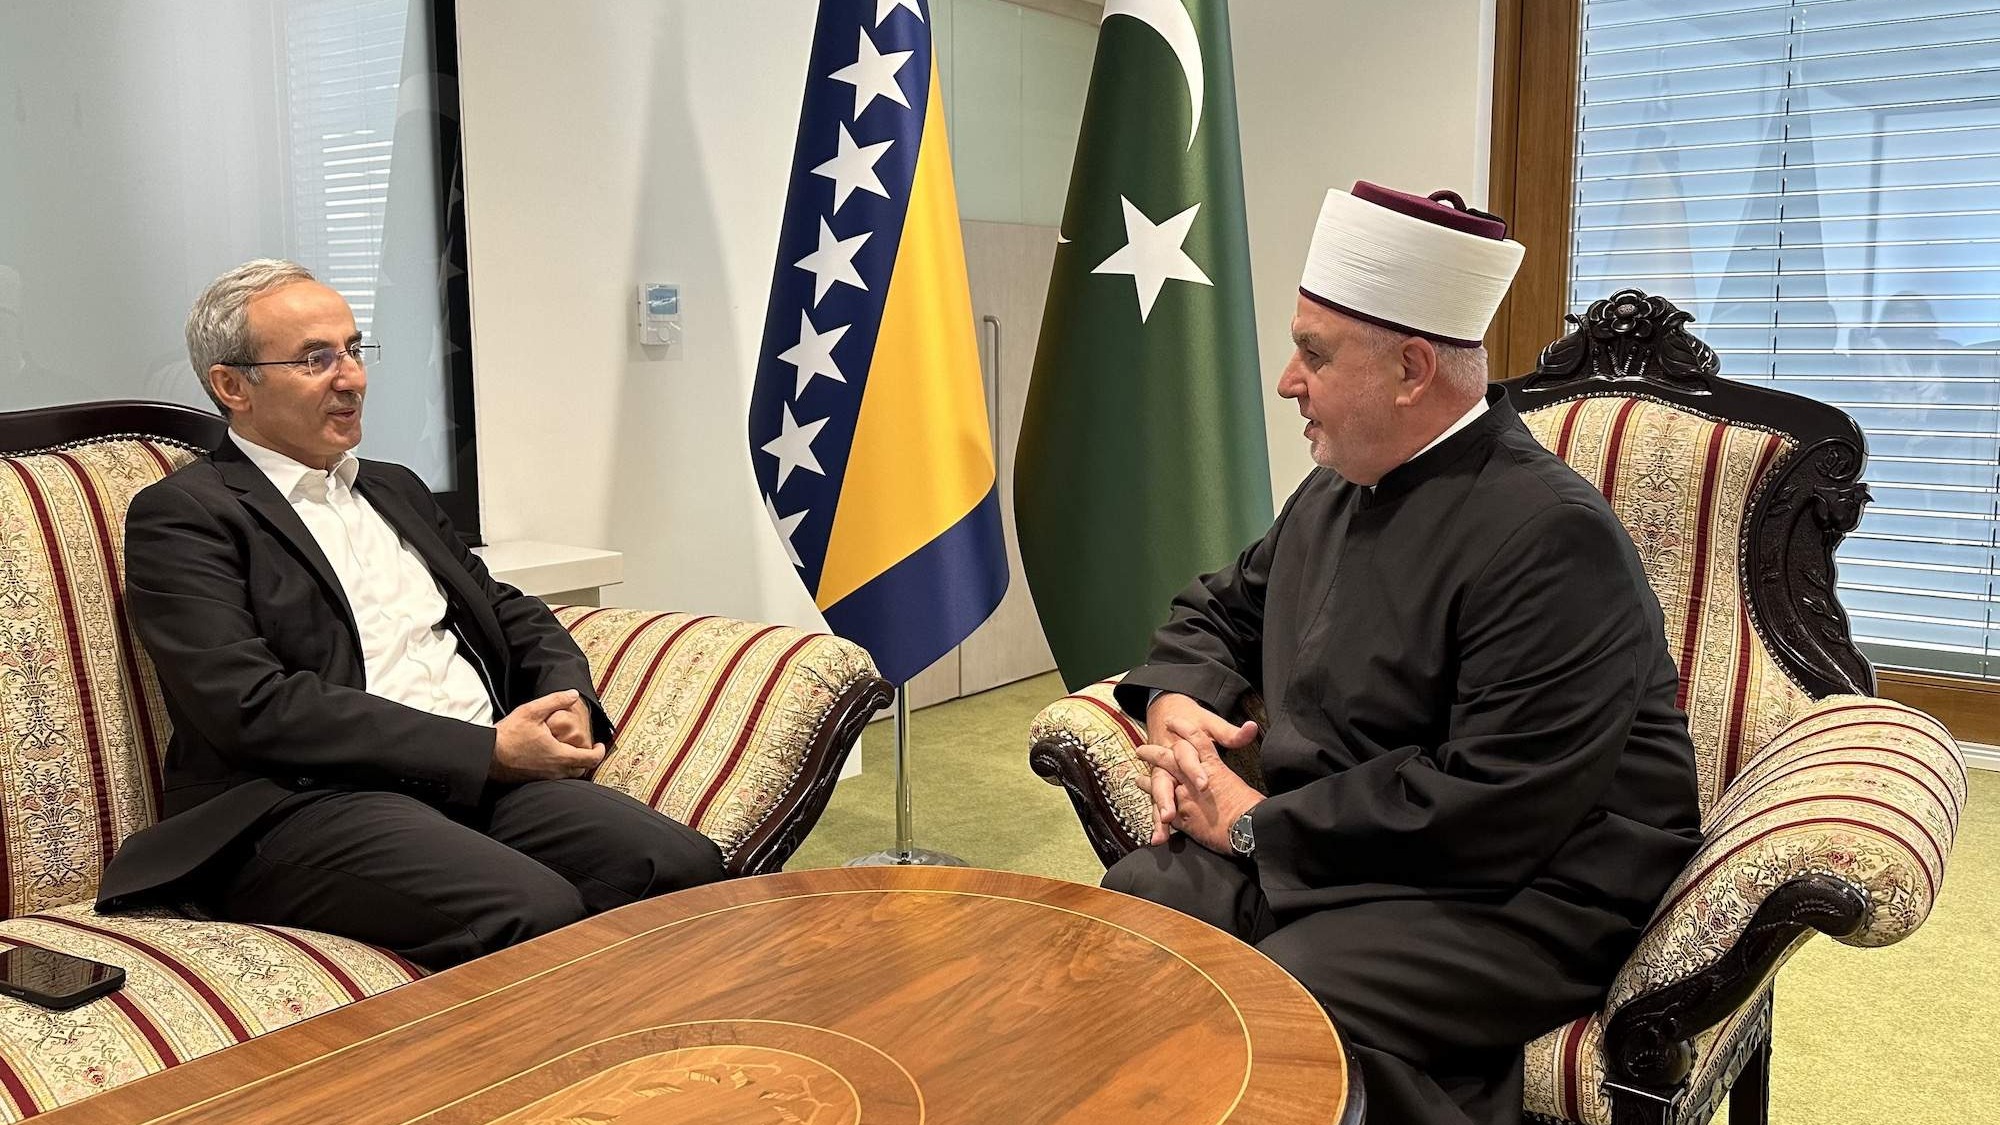 Reisul-ulemu posjetio rektor Islamskog univerziteta nauke i tehnologije Gazientep